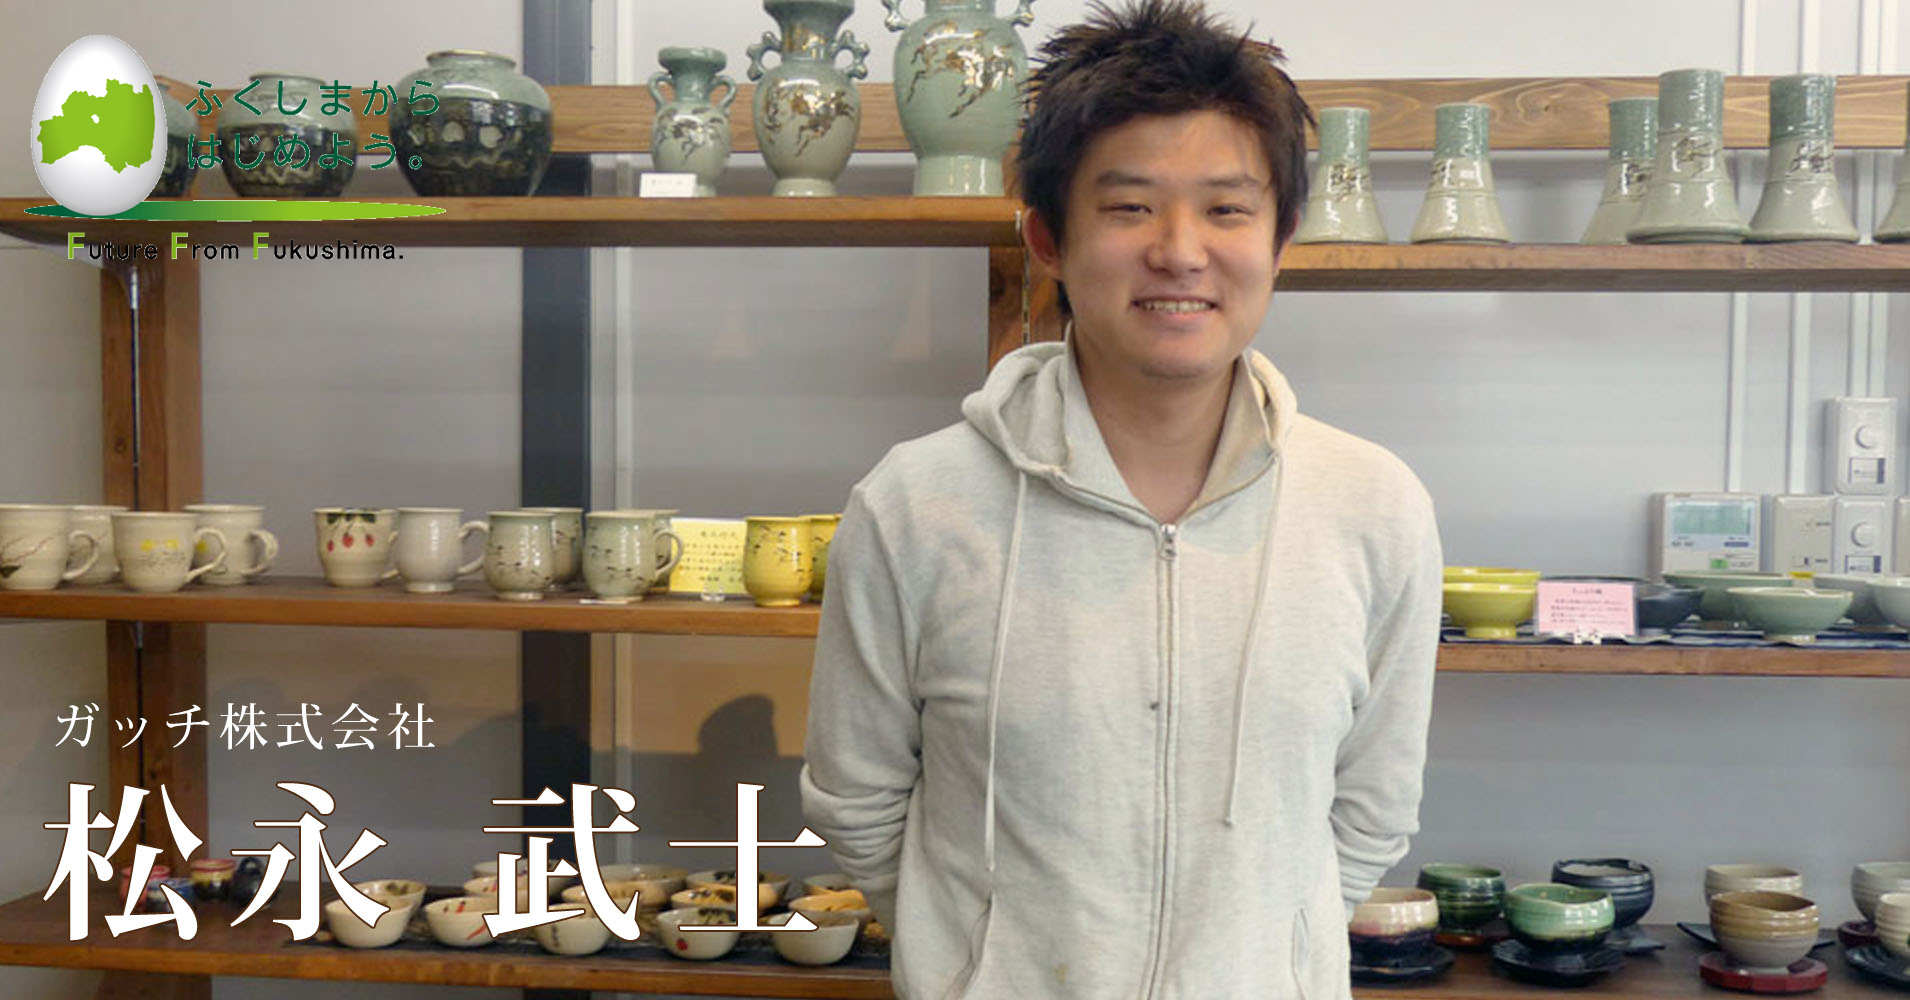 大学２年生で海外起業した男が、震災後福島に戻って大堀相馬焼を継いだ理由。